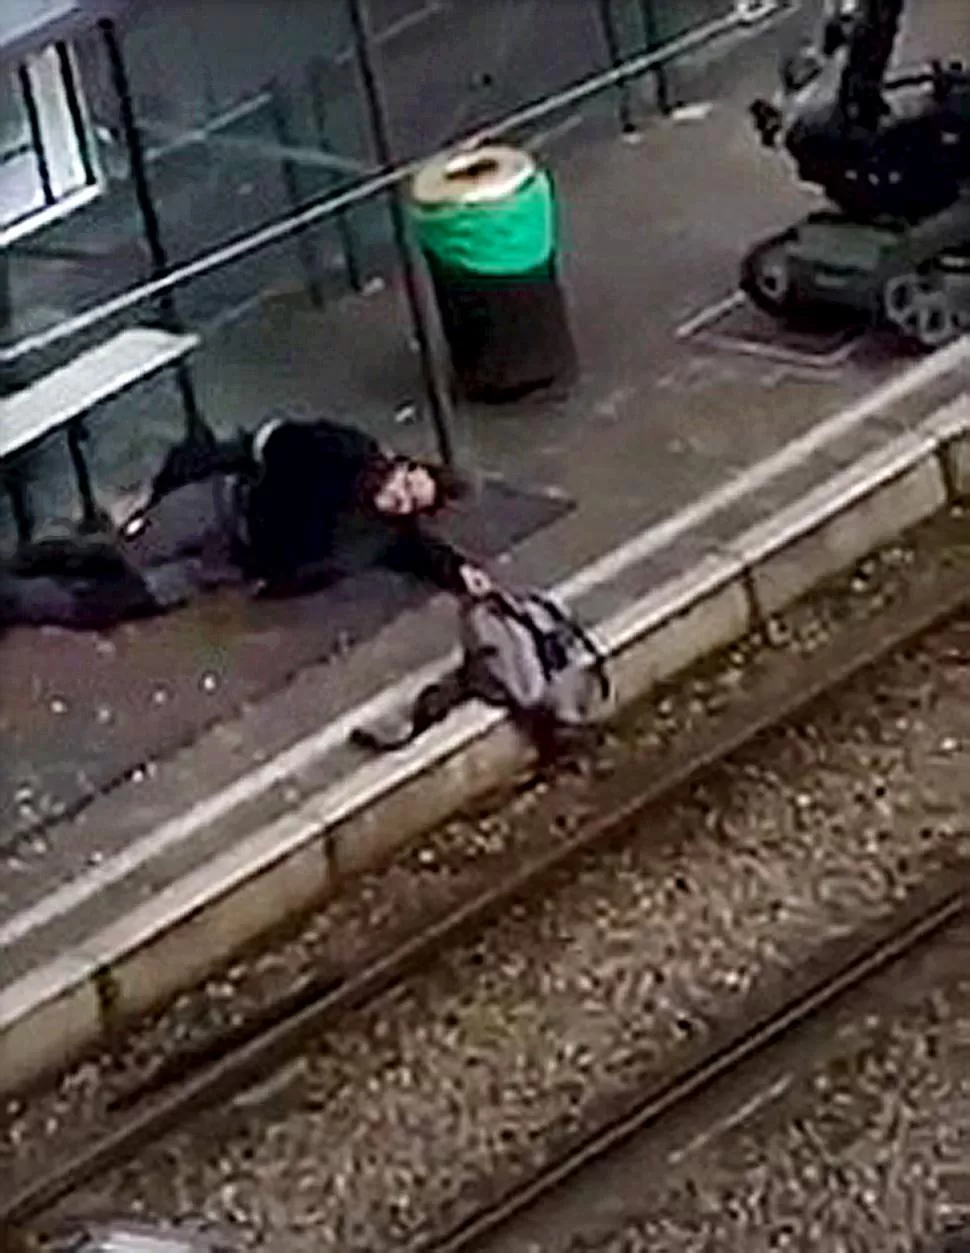 HUÍDA. Un sospechoso cae herido por la policía en la plataforma de una estación de tren de Schaerbeek. Reuters